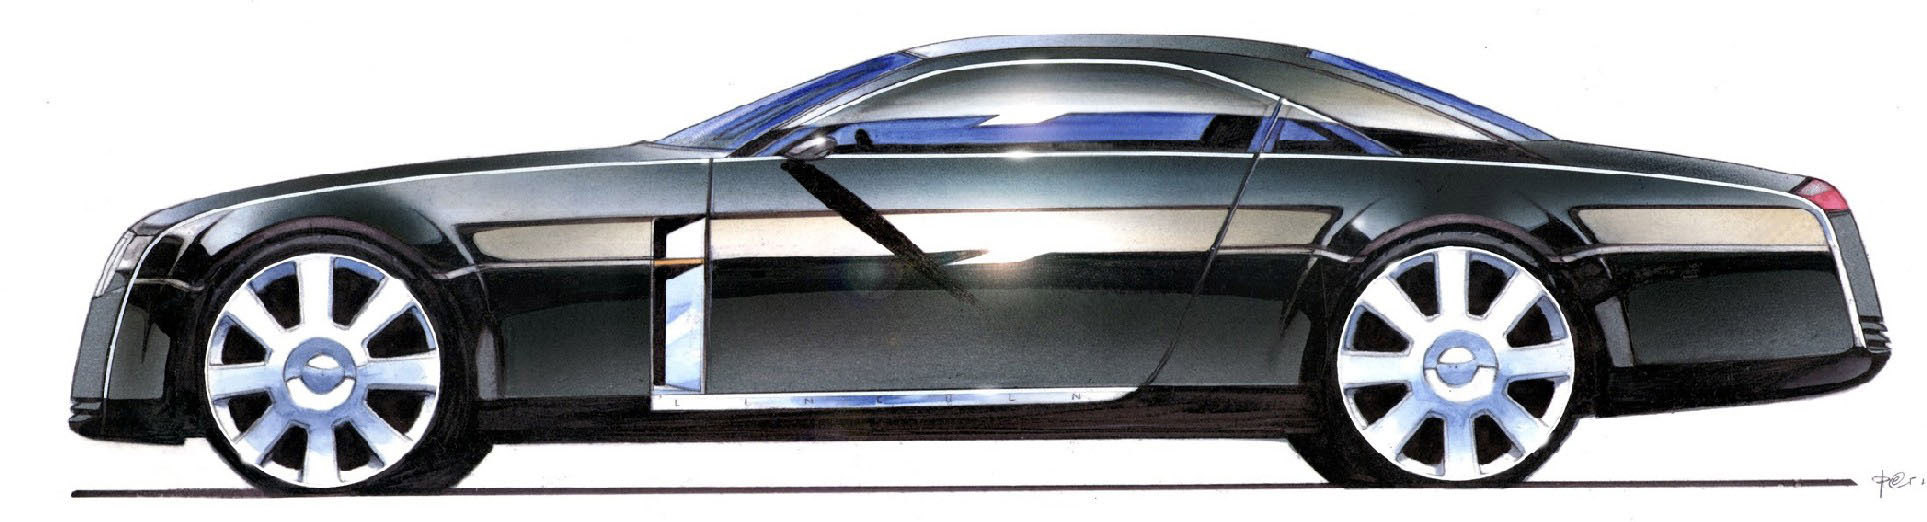 Lincoln MK 9 Concept